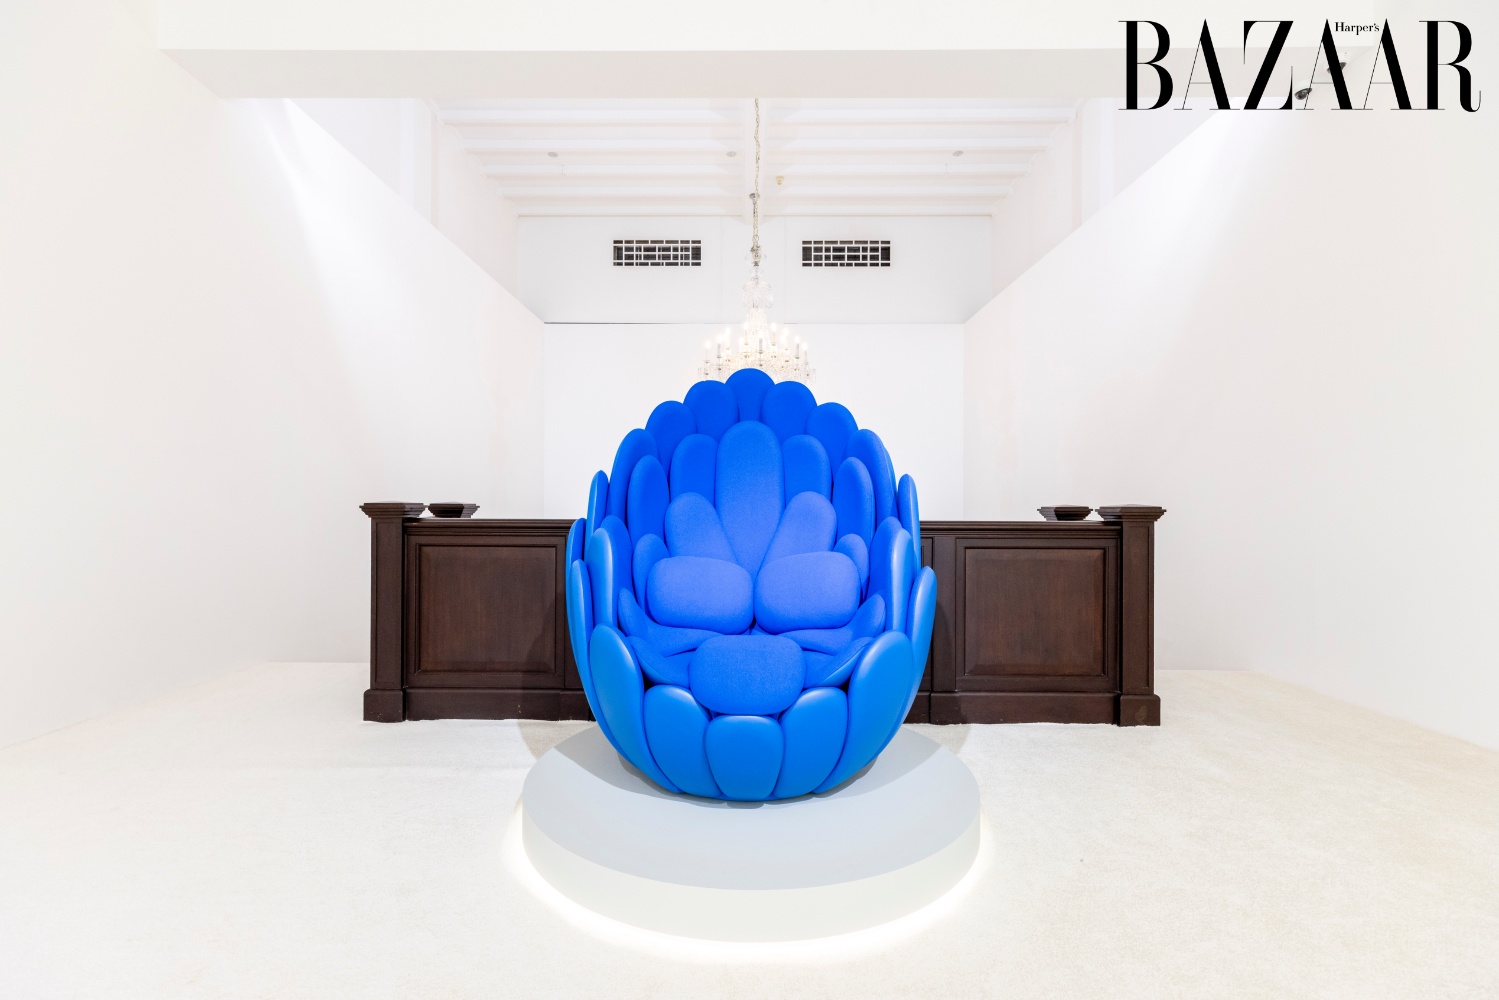 Ghế Bulbo do nghệ sĩ Fernando và Humberto Campana thiết kế, thuộc bộ sưu tập Objets Nomades của Louis Vuitton.